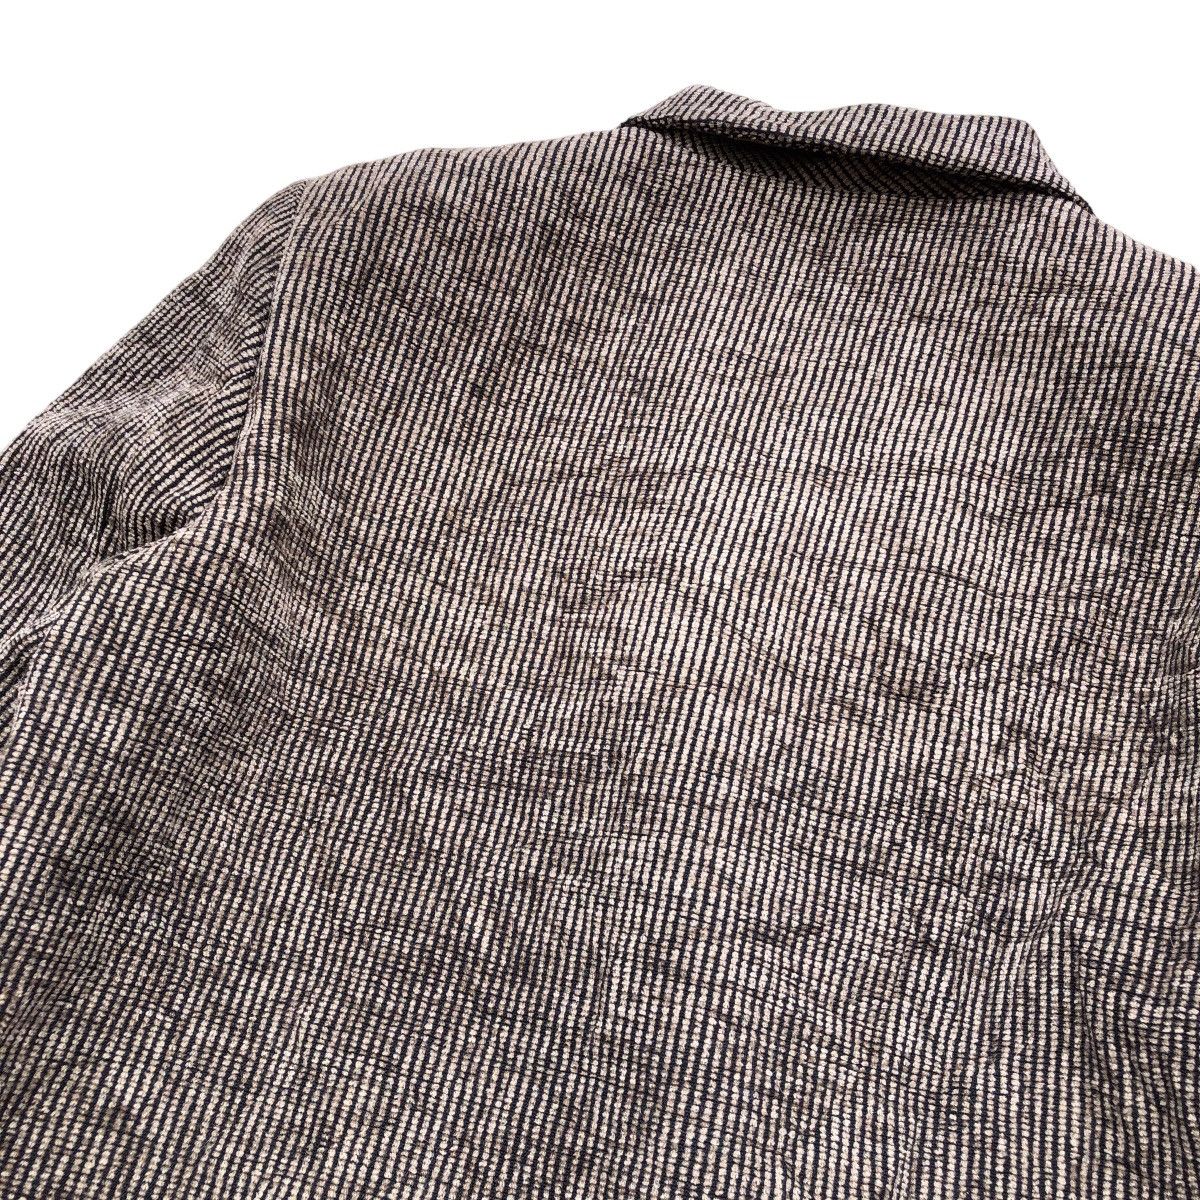 Archival Clothing PAUL LEMAIRE Corduroy Blazer Coat Size M / US 6-8 / IT 42-44 - 6 Thumbnail